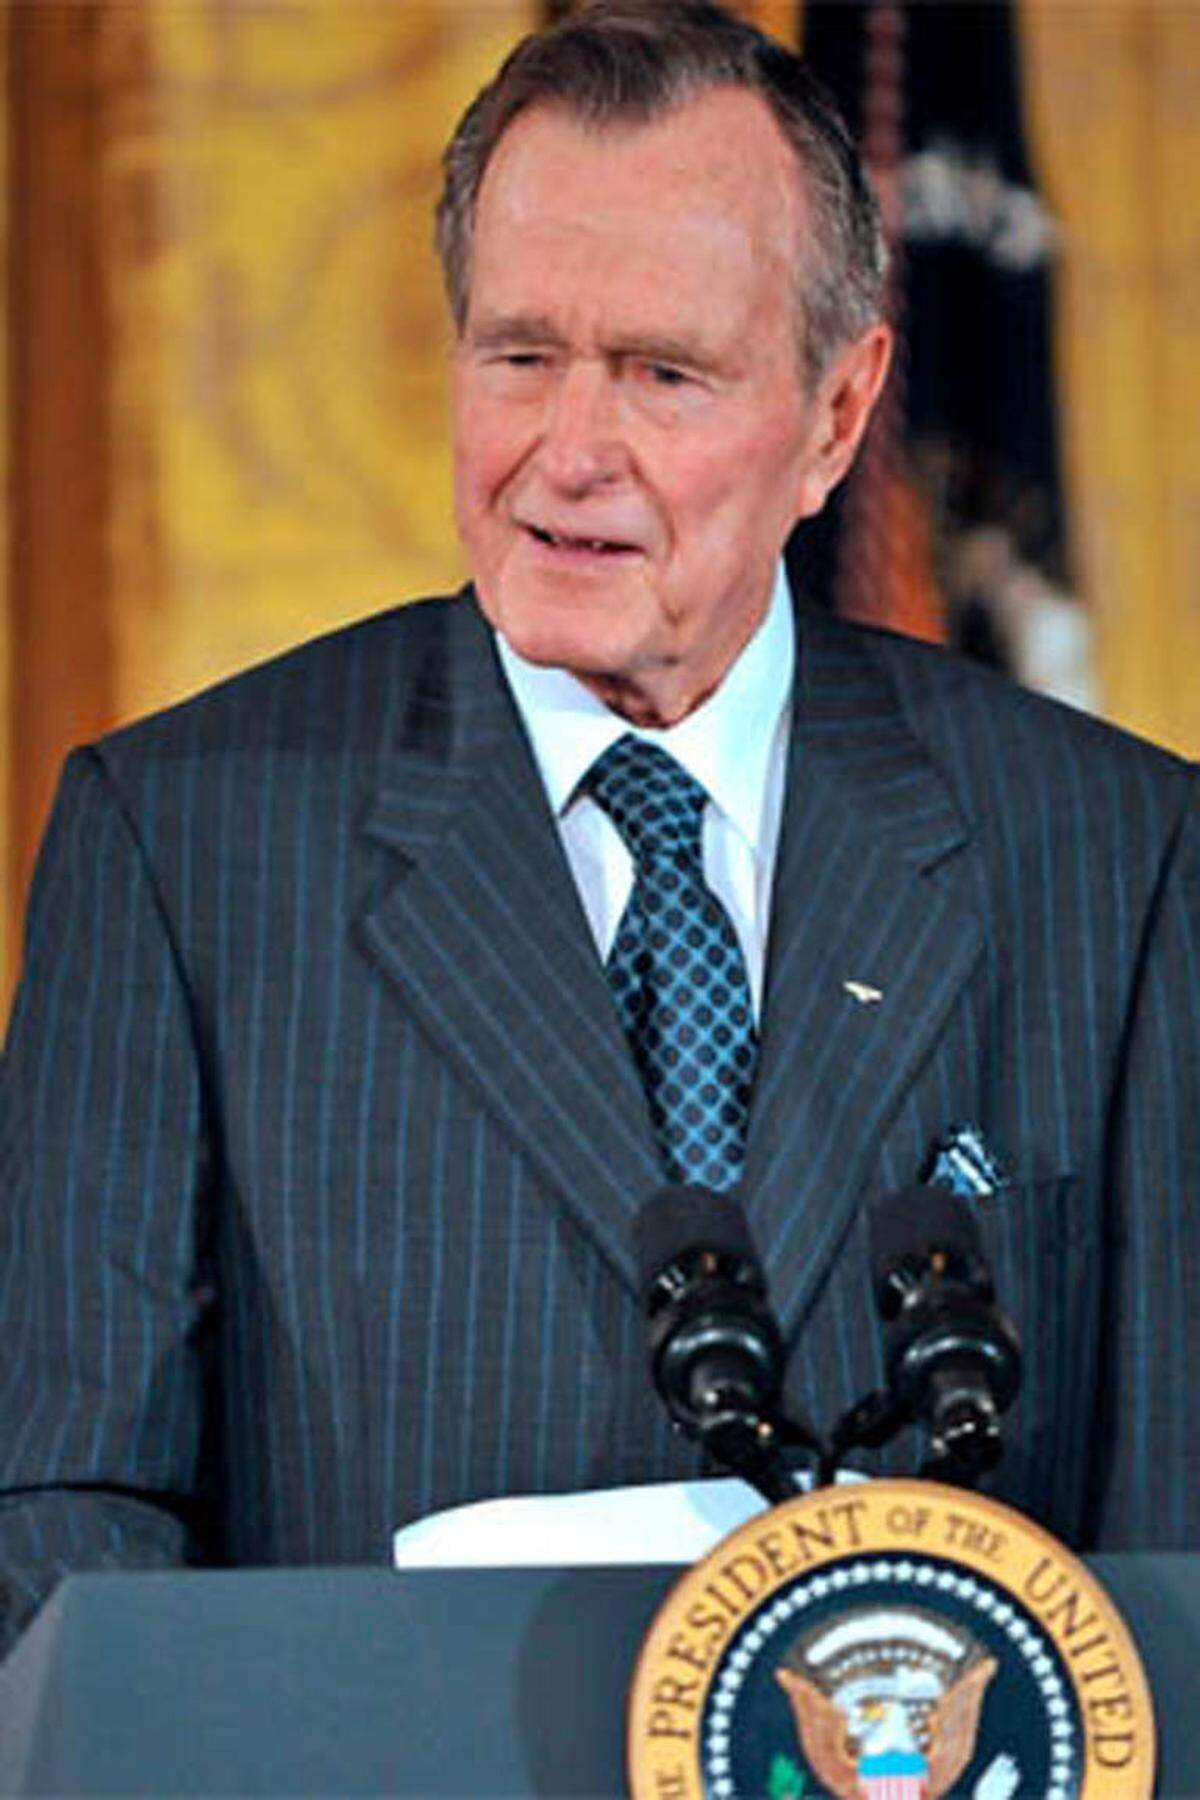 Bushs gleichnamiger Präsidenten-Vater prahlte einst vor offenem Mikrophon, er habe einer politischen Gegnerin bei einer Debatte "Feuer unterm Hintern gemacht".